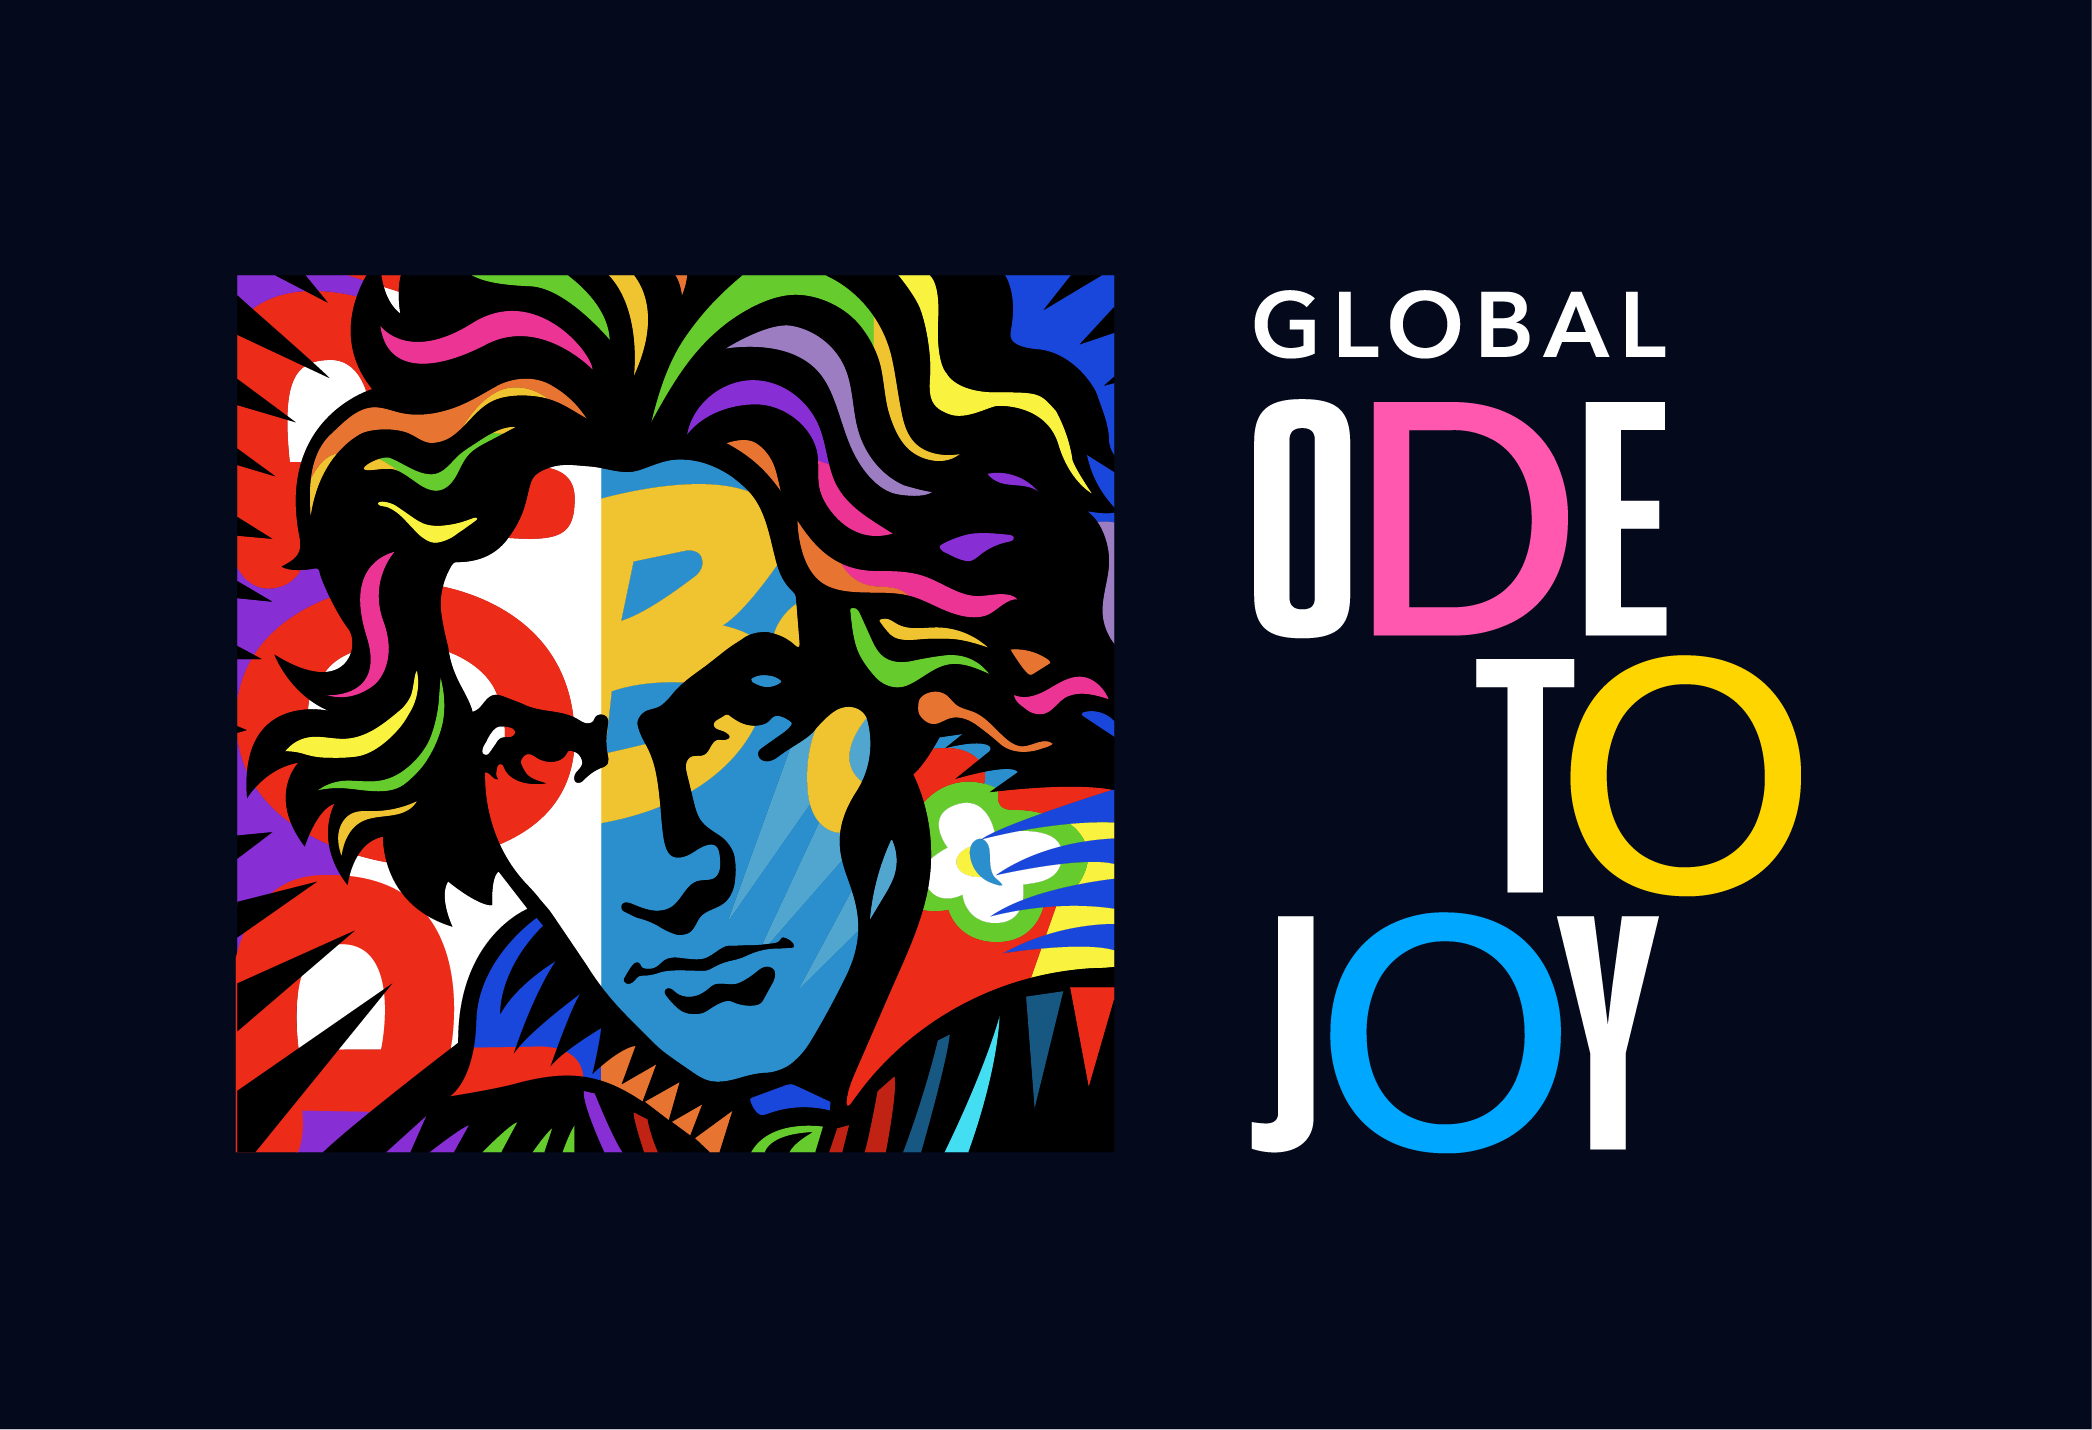 優秀作品はgoogle Arts Cultureのyoutubeチャンネルに採用 ベートーヴェン生誕250周年記念国際動画プロジェクト Global Ode To Joy 一般社団法人エル システマジャパンのプレスリリース